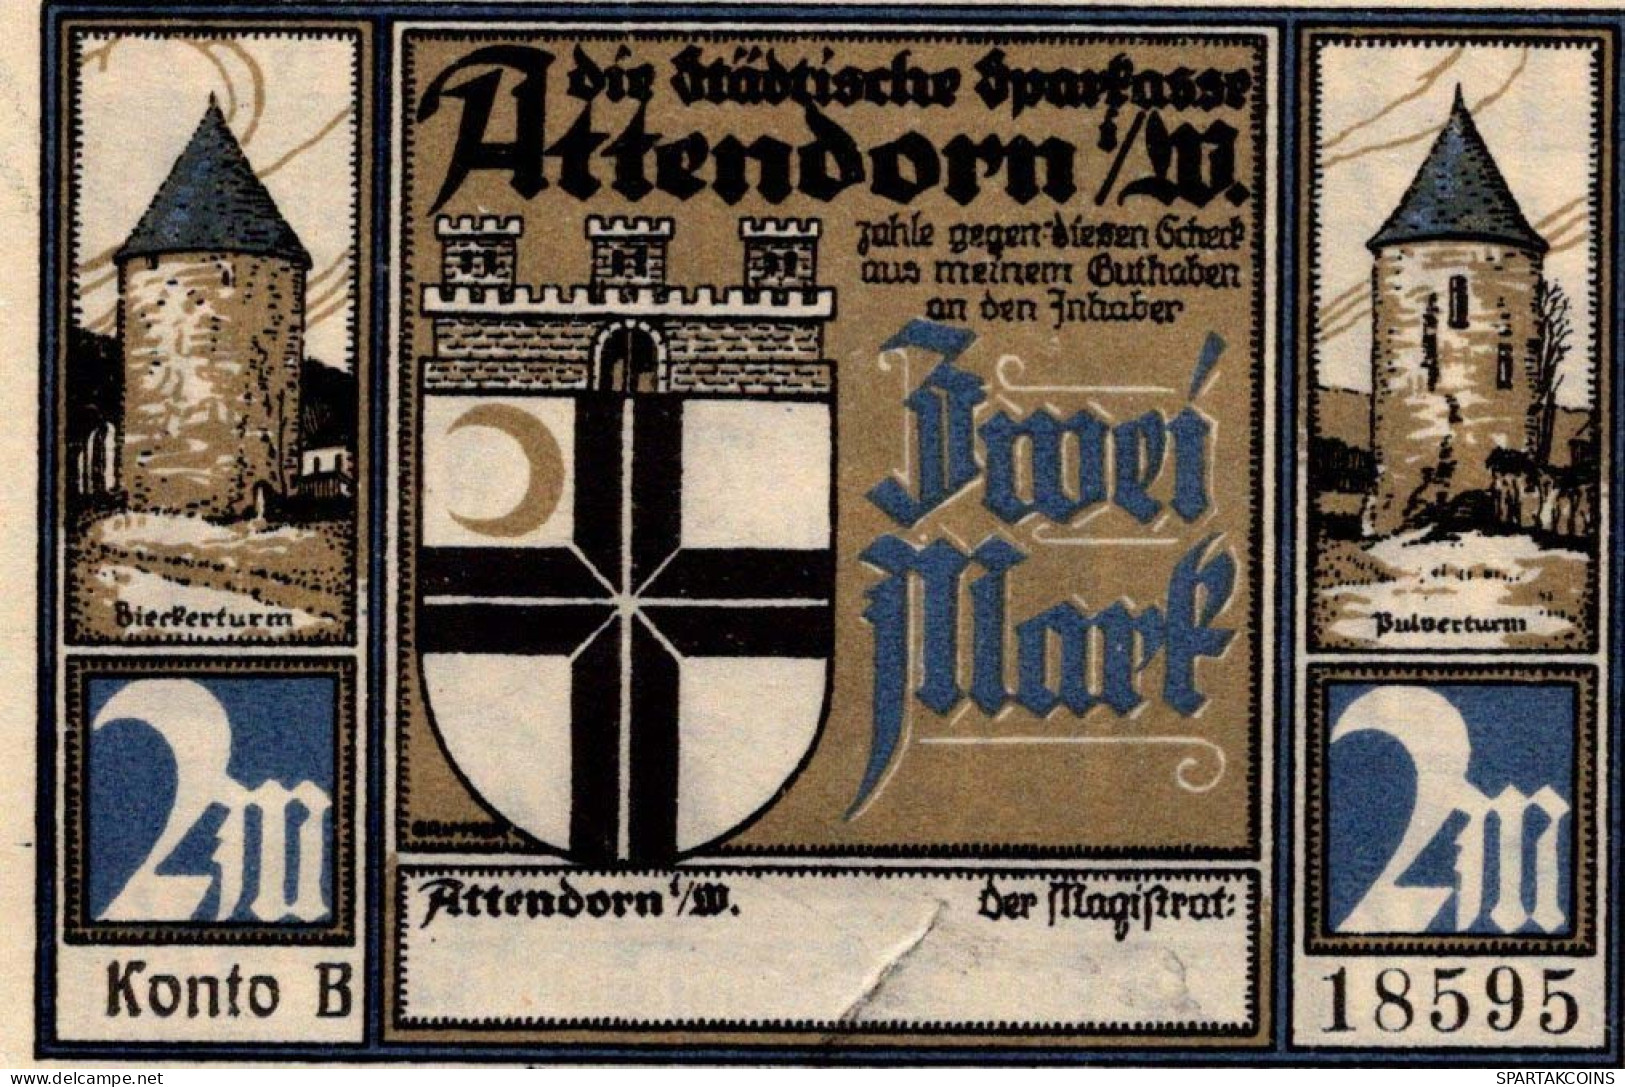 2 MARK 1922 Stadt ATTENDORN Westphalia UNC DEUTSCHLAND Notgeld Banknote #PC710 - [11] Local Banknote Issues